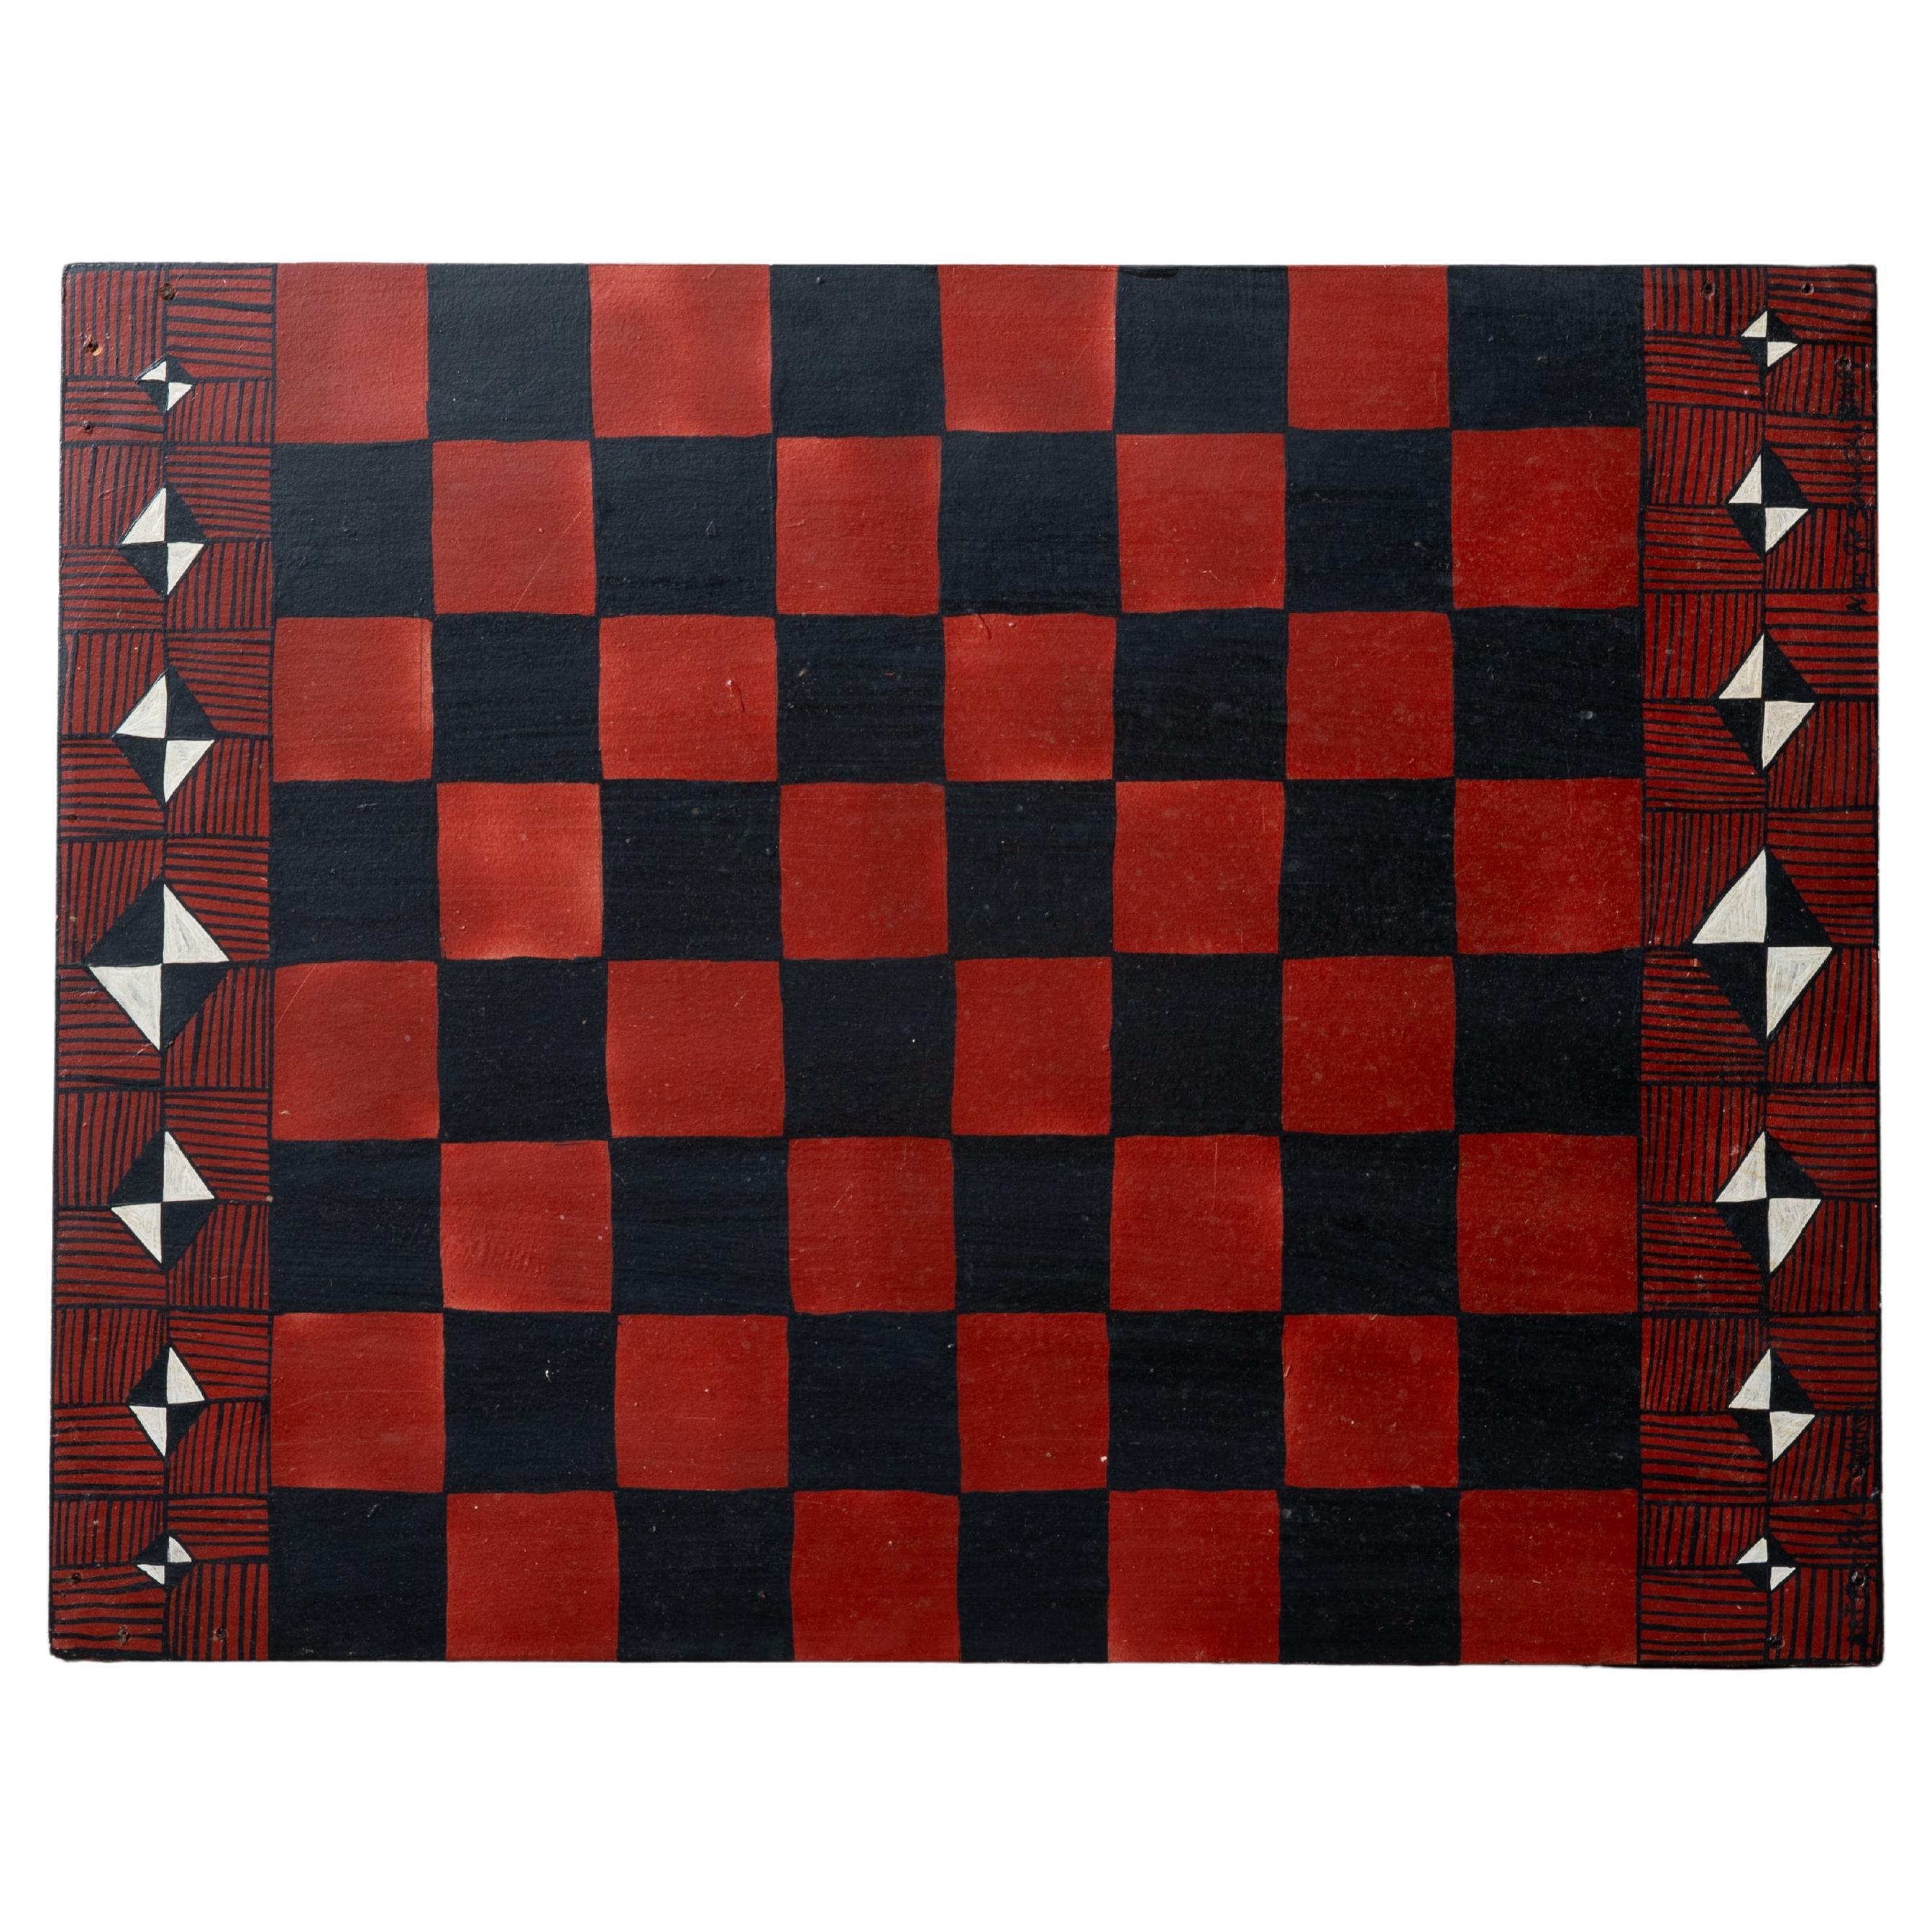 Paul Walker - Outsider Art Checkerboard